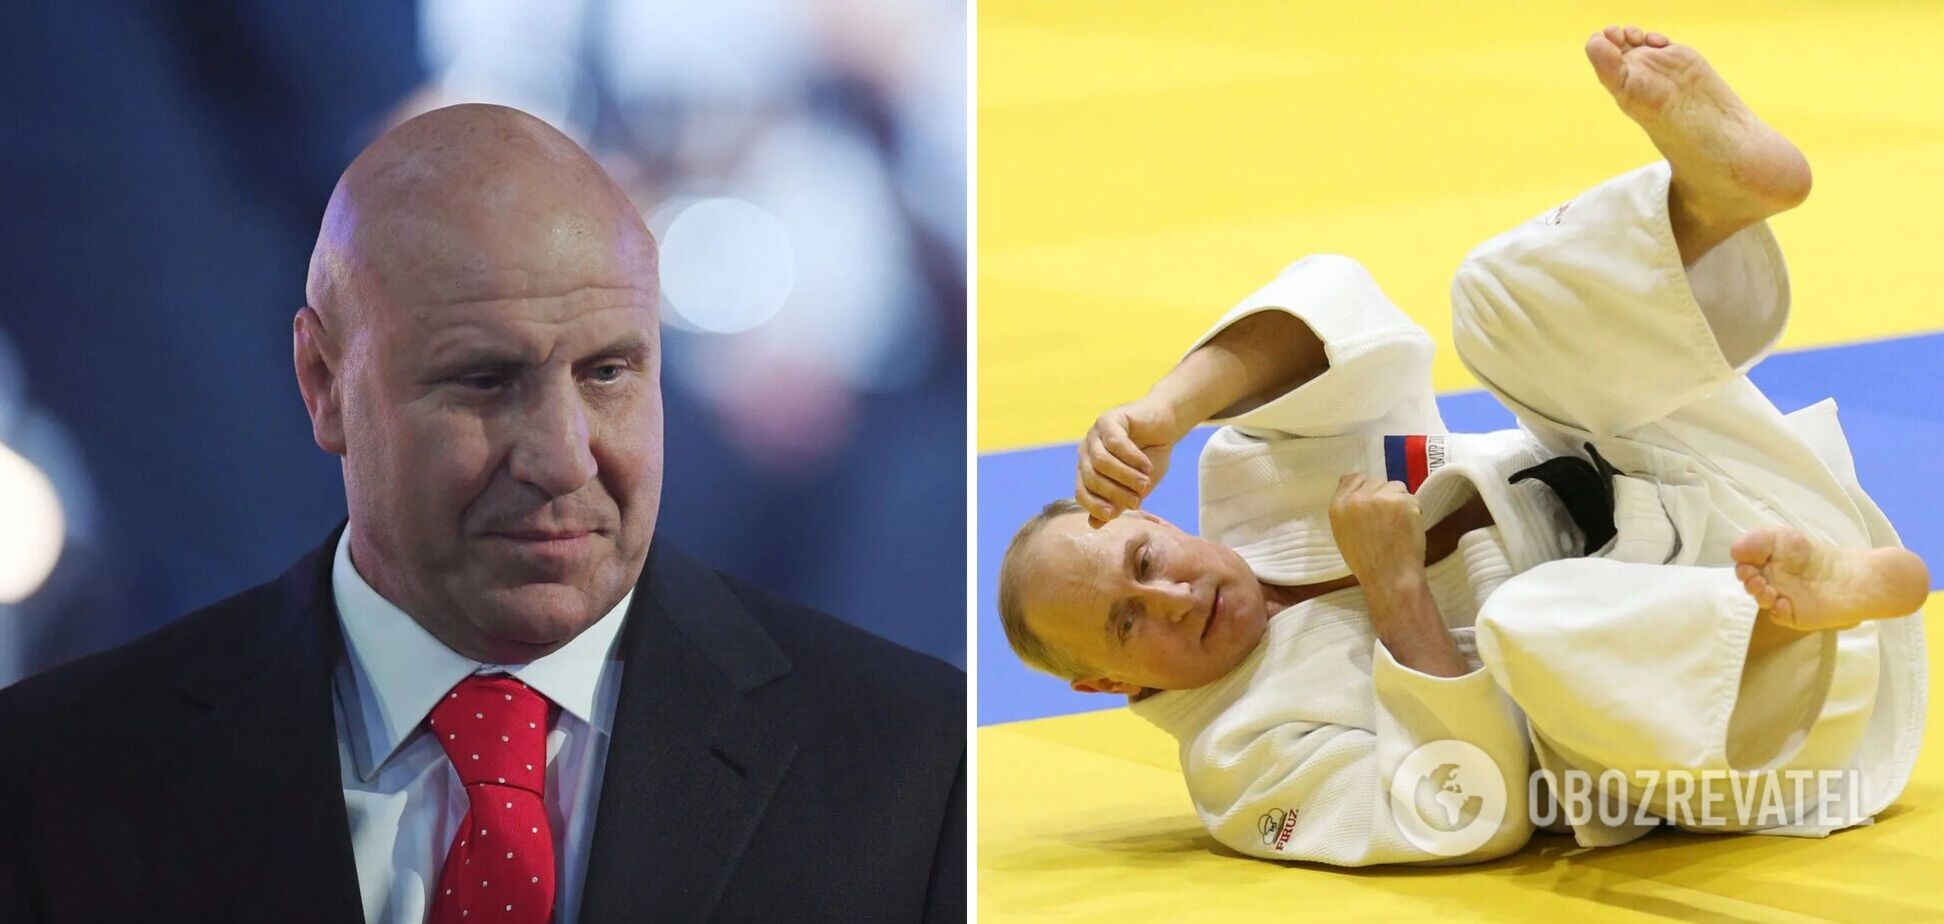 'Это недопустимо': чемпион ОИ из РФ обвинил МОК в том, что от россиян требуют предать Путина